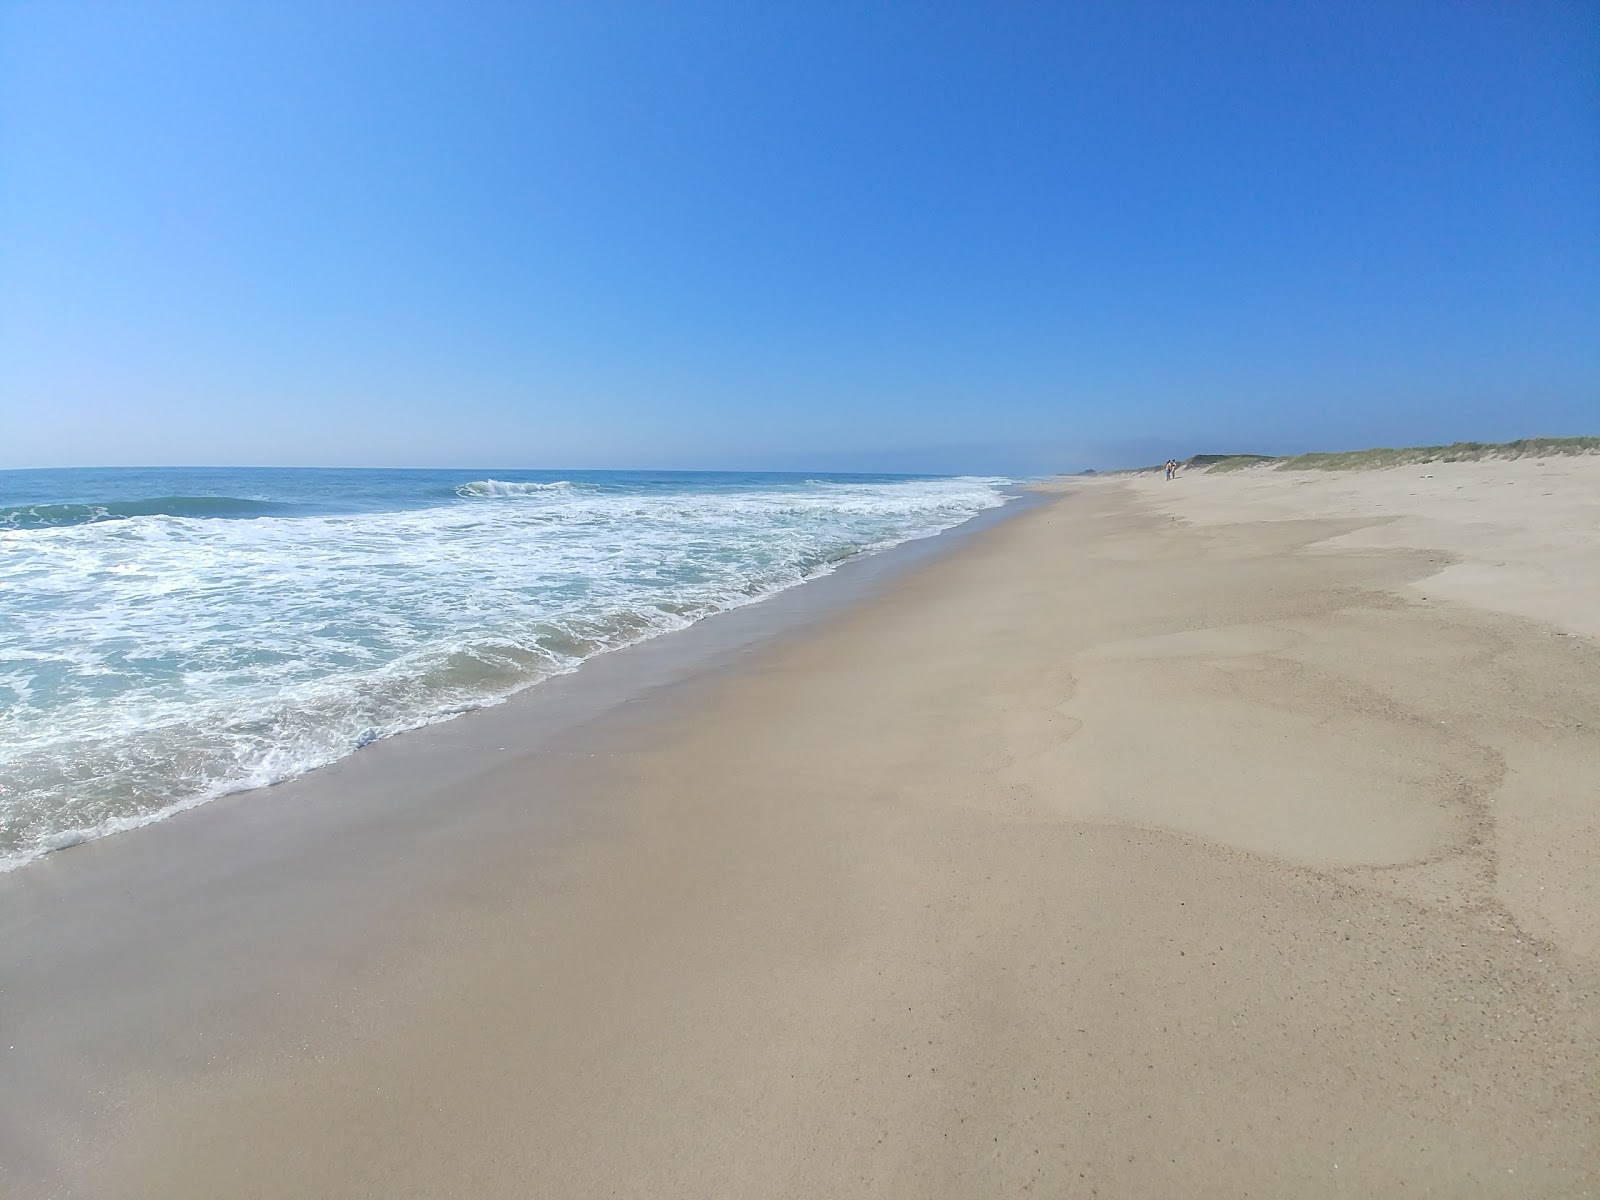 Fotografija Miacomet Beach nahaja se v naravnem okolju